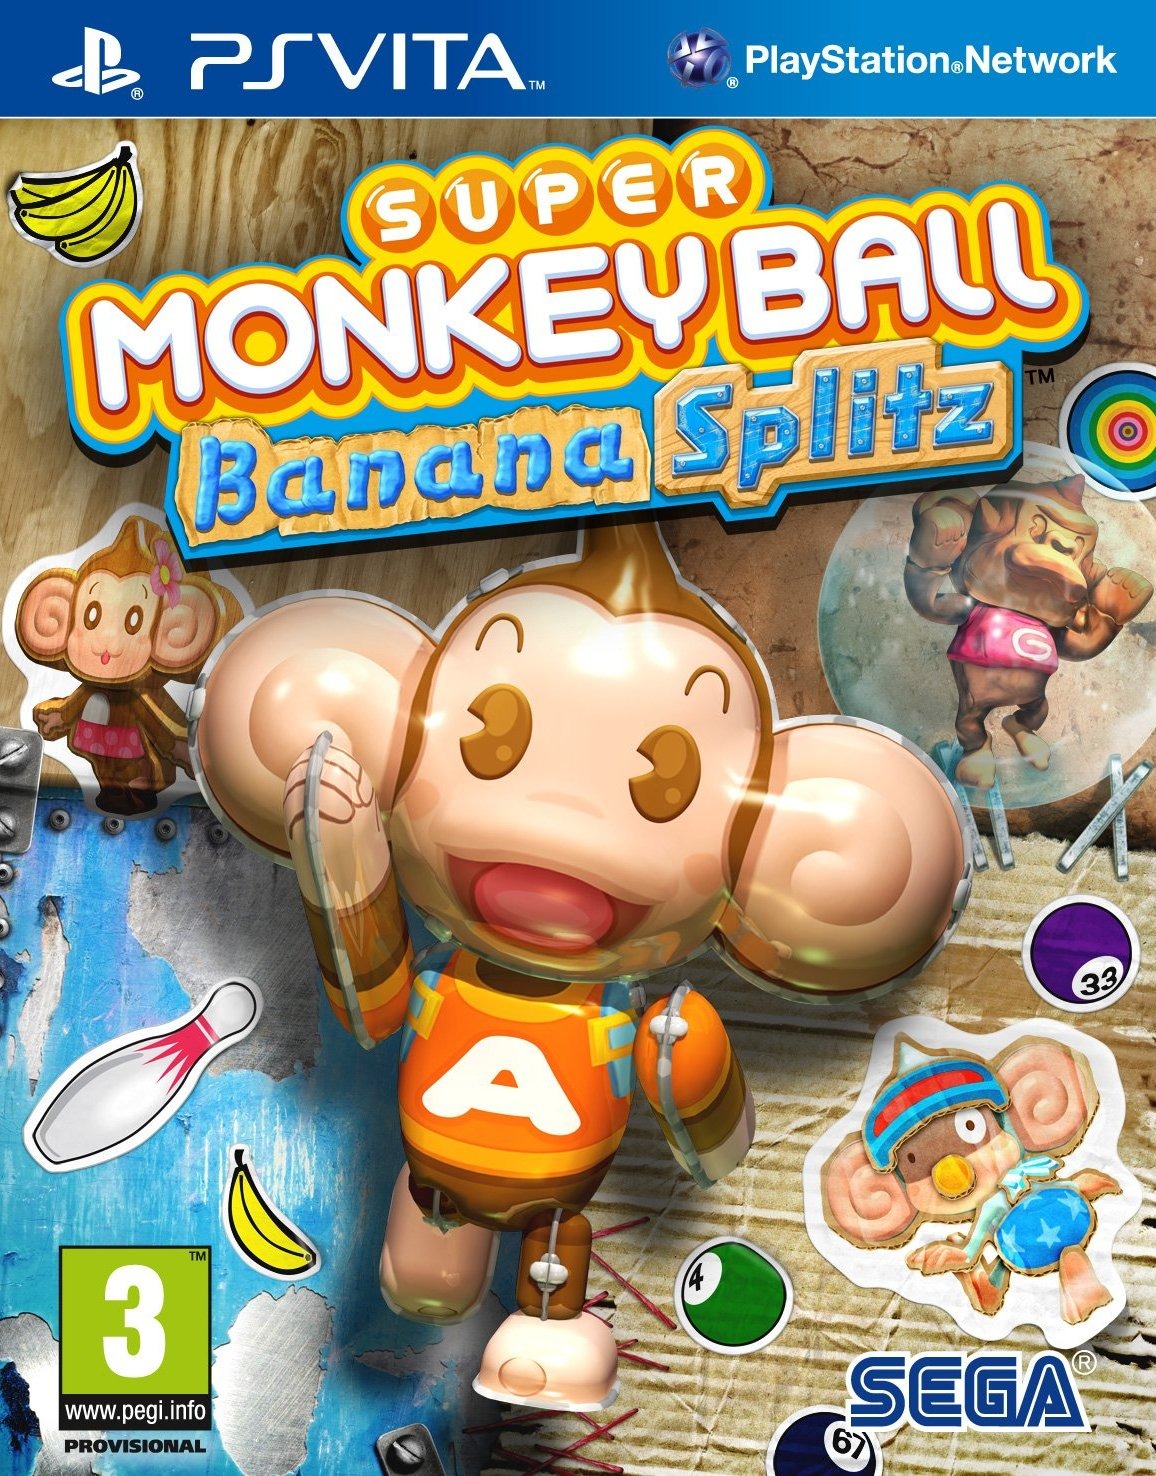 jaquette du jeu vidéo Super Monkey Ball: Banana Blitz